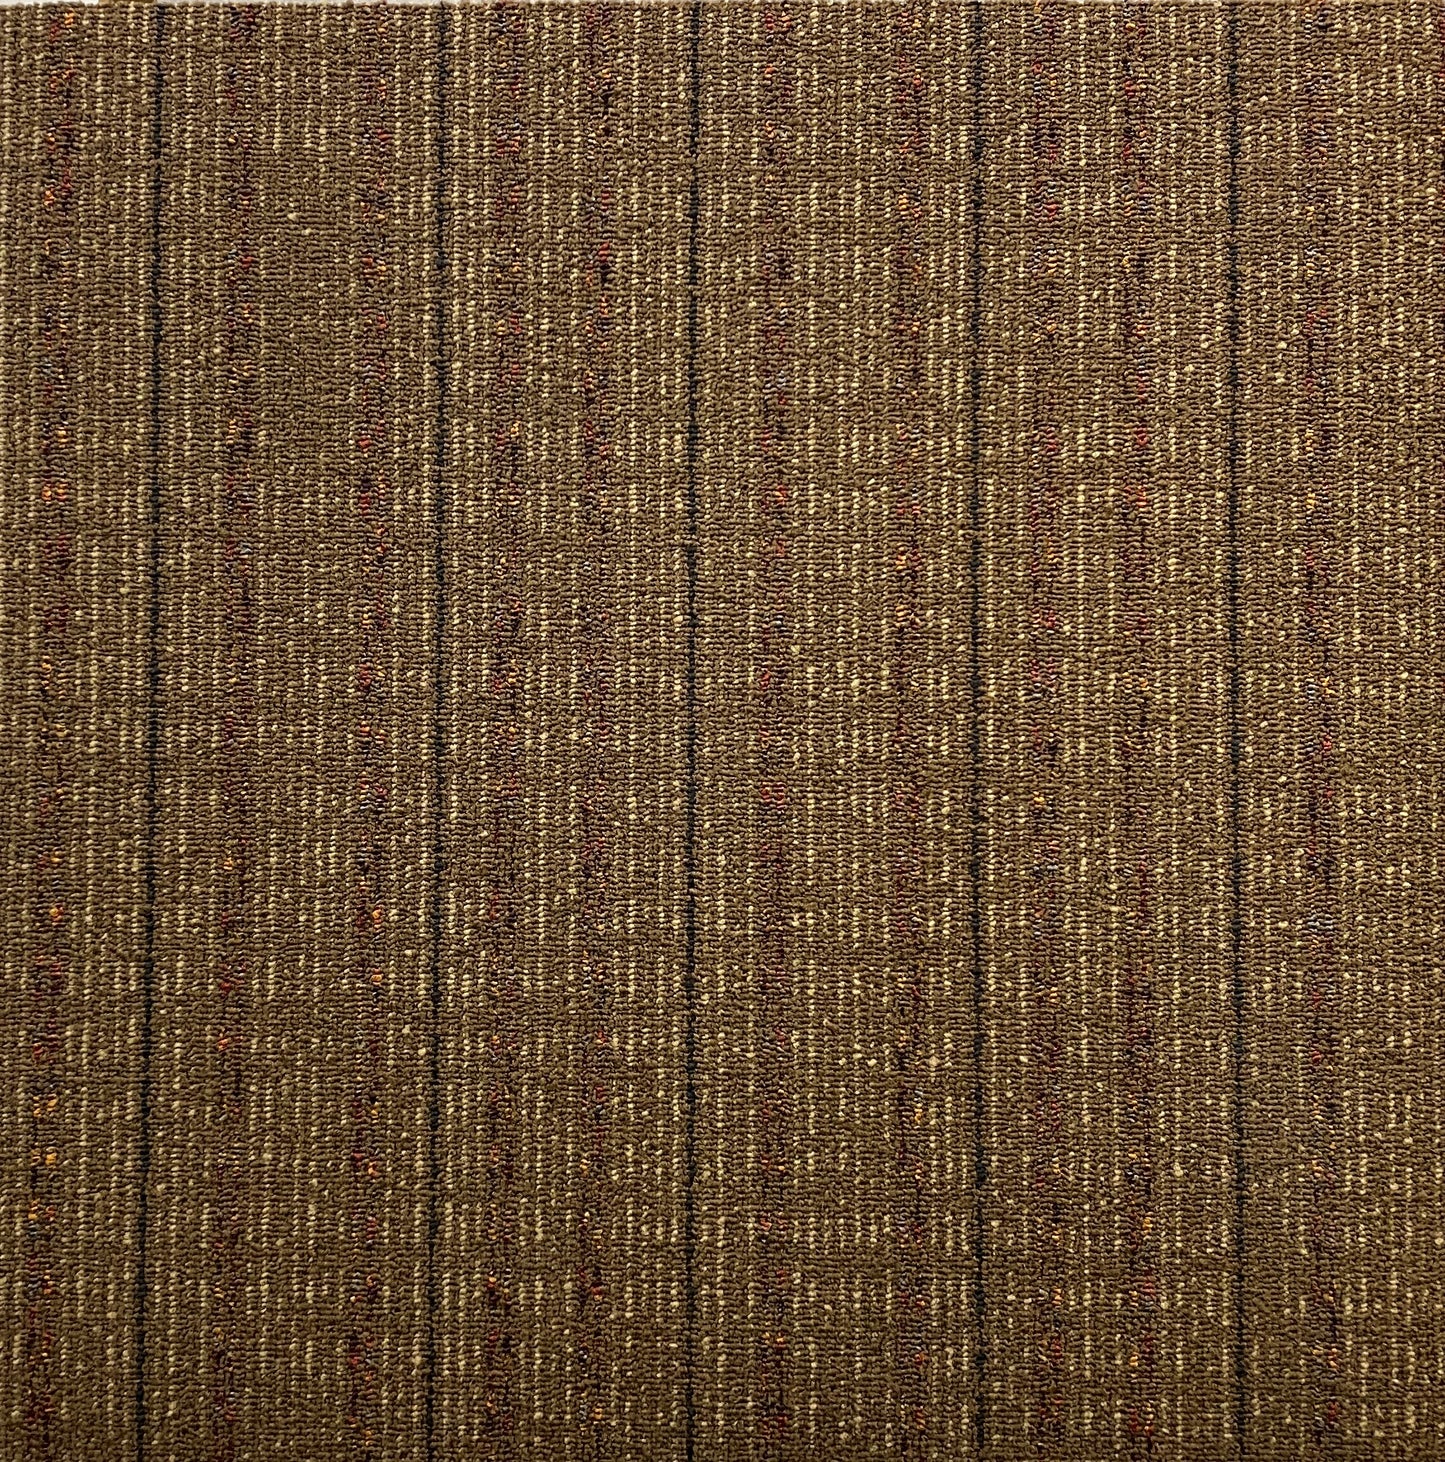 Shaw Gold Carpet Tile-24"x 24"(12 Tiles/case, 48 sq. ft./case)